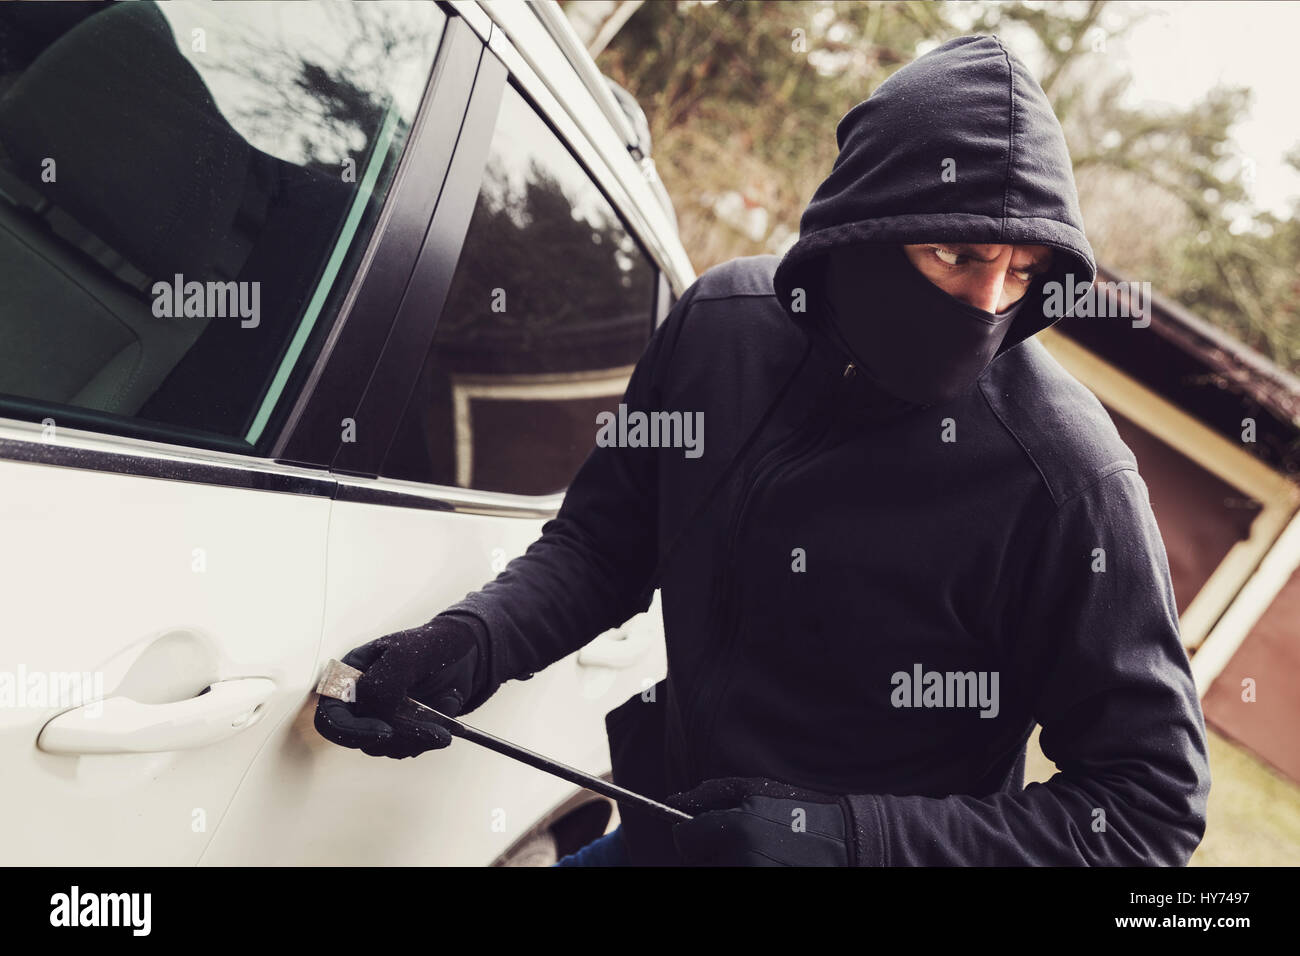 Kfz-Diebstahl - Dieb versucht, in das Fahrzeug zu brechen Stockfoto